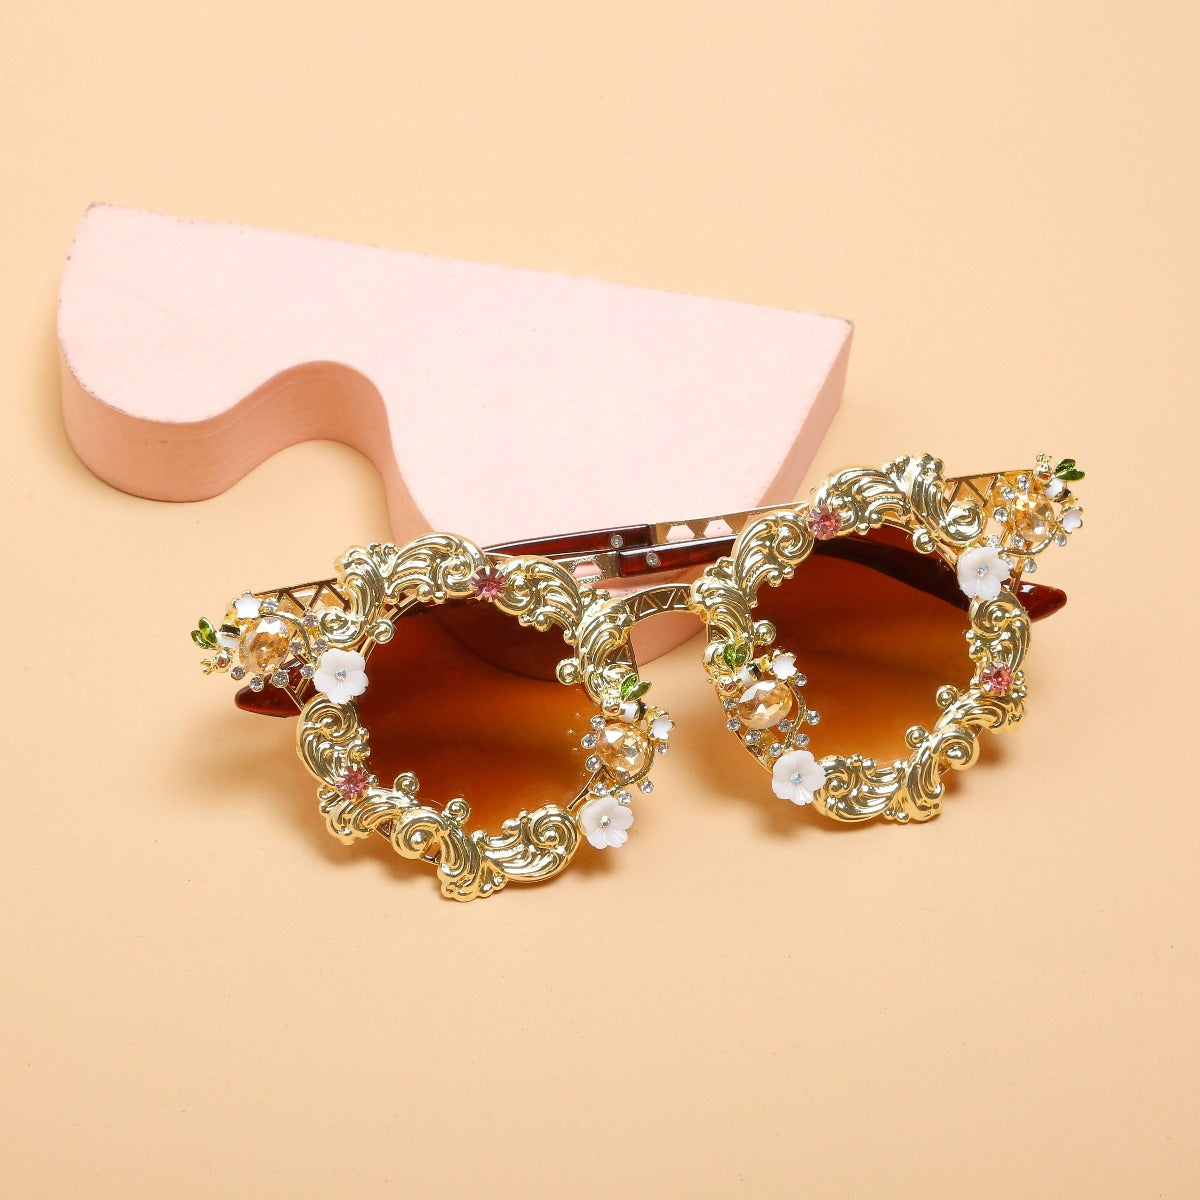 Rococo inspired Sunglasses